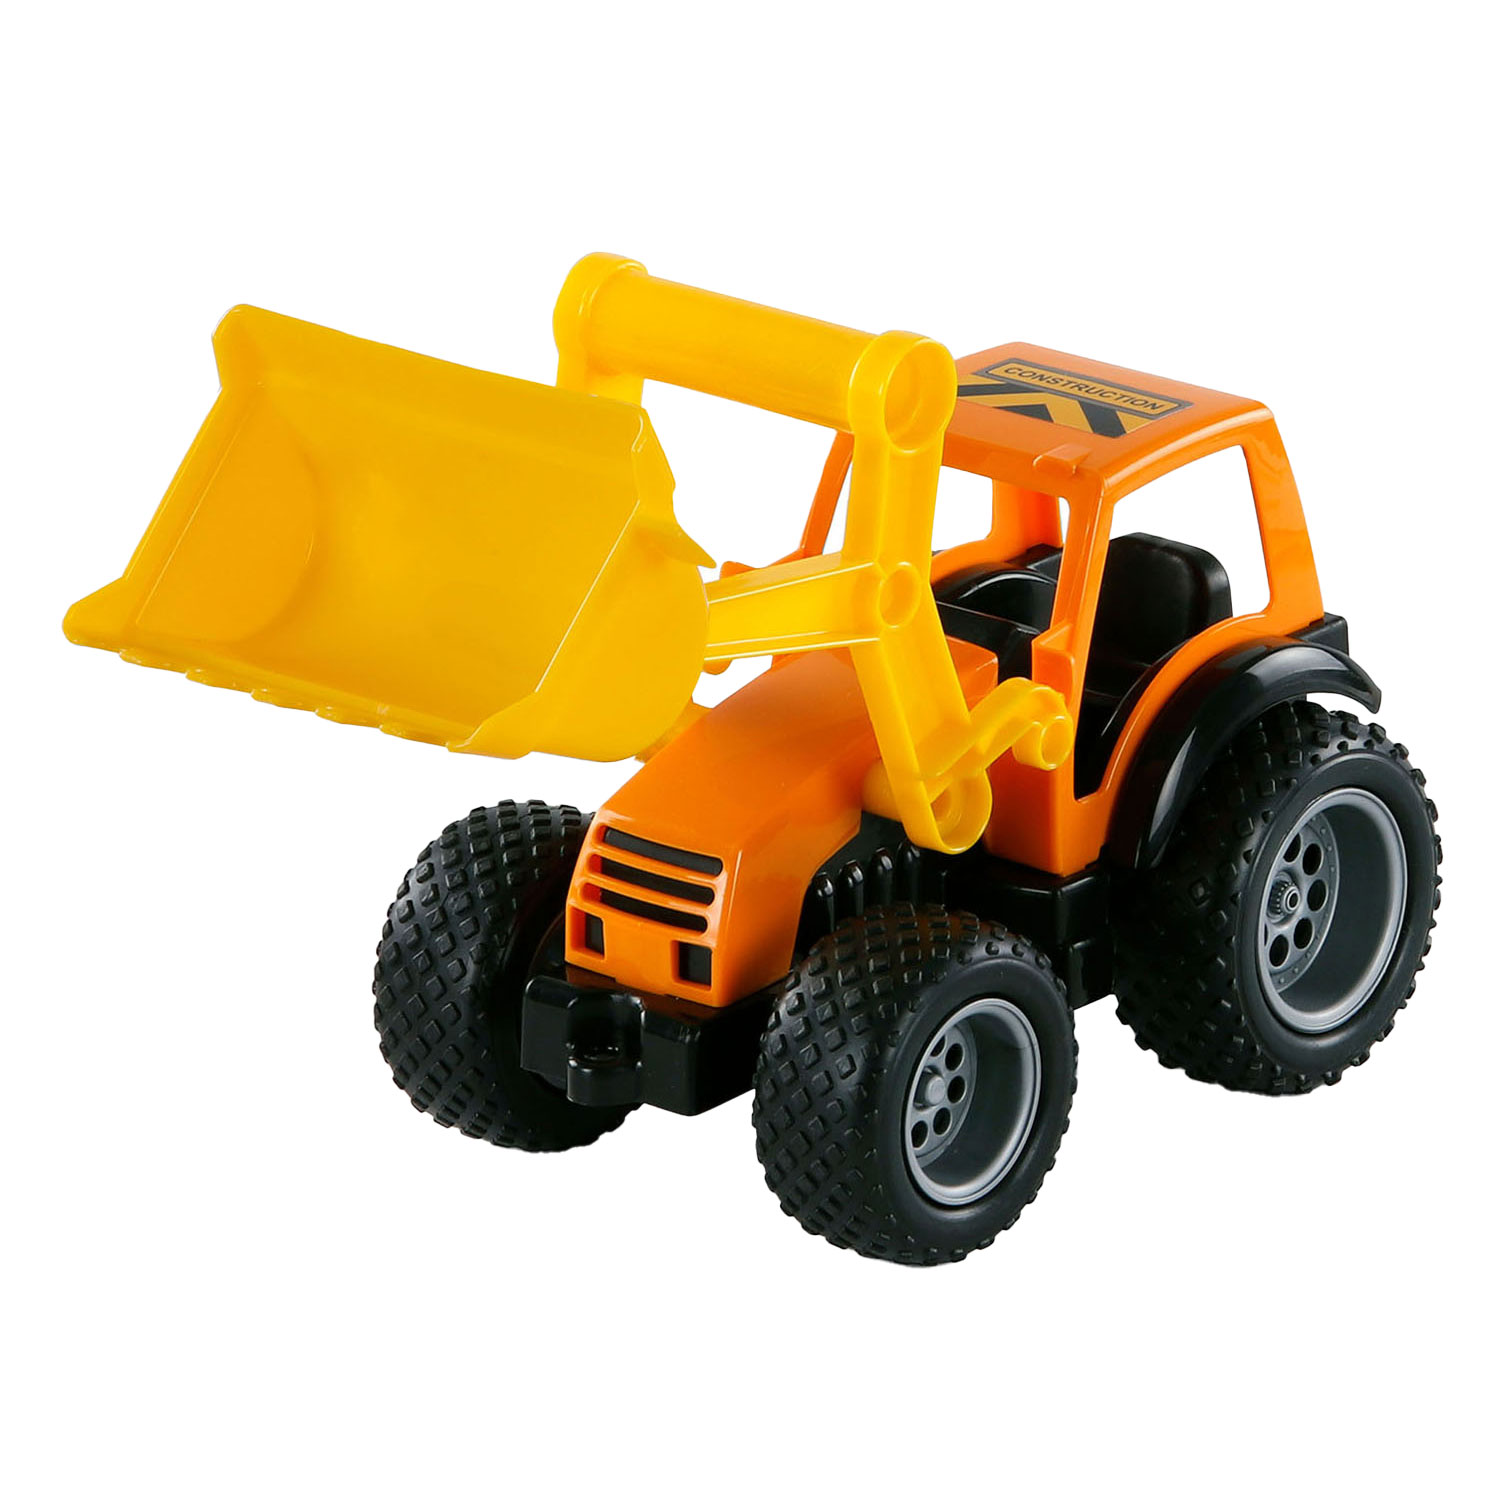 Tracteur Cavallino Grip avec pneus en caoutchouc, 32 cm